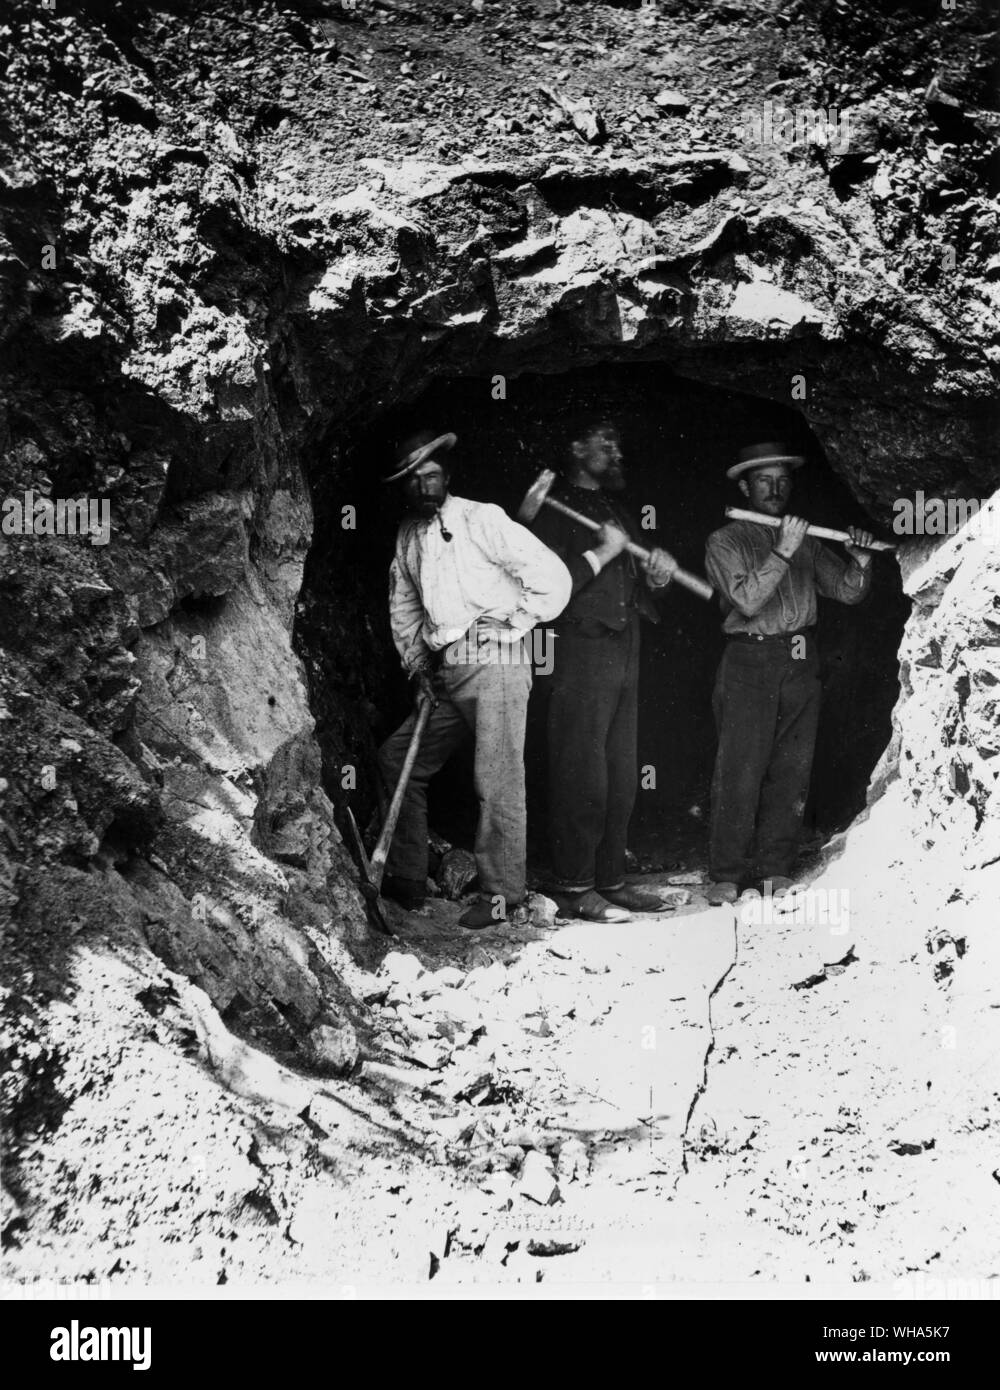 Drei stehende Männer in einem Tunnel, diese Männer nur eine Bohrung von drei Tunneln durch die schroffe Wasatch Berge begonnen. Das Paar auf der rechten Seite sind, bohren Sie ein Loch in die eine Abgabe von Sprengarbeiten Pulver zu setzen. Foto von Russell 1868 Stockfoto